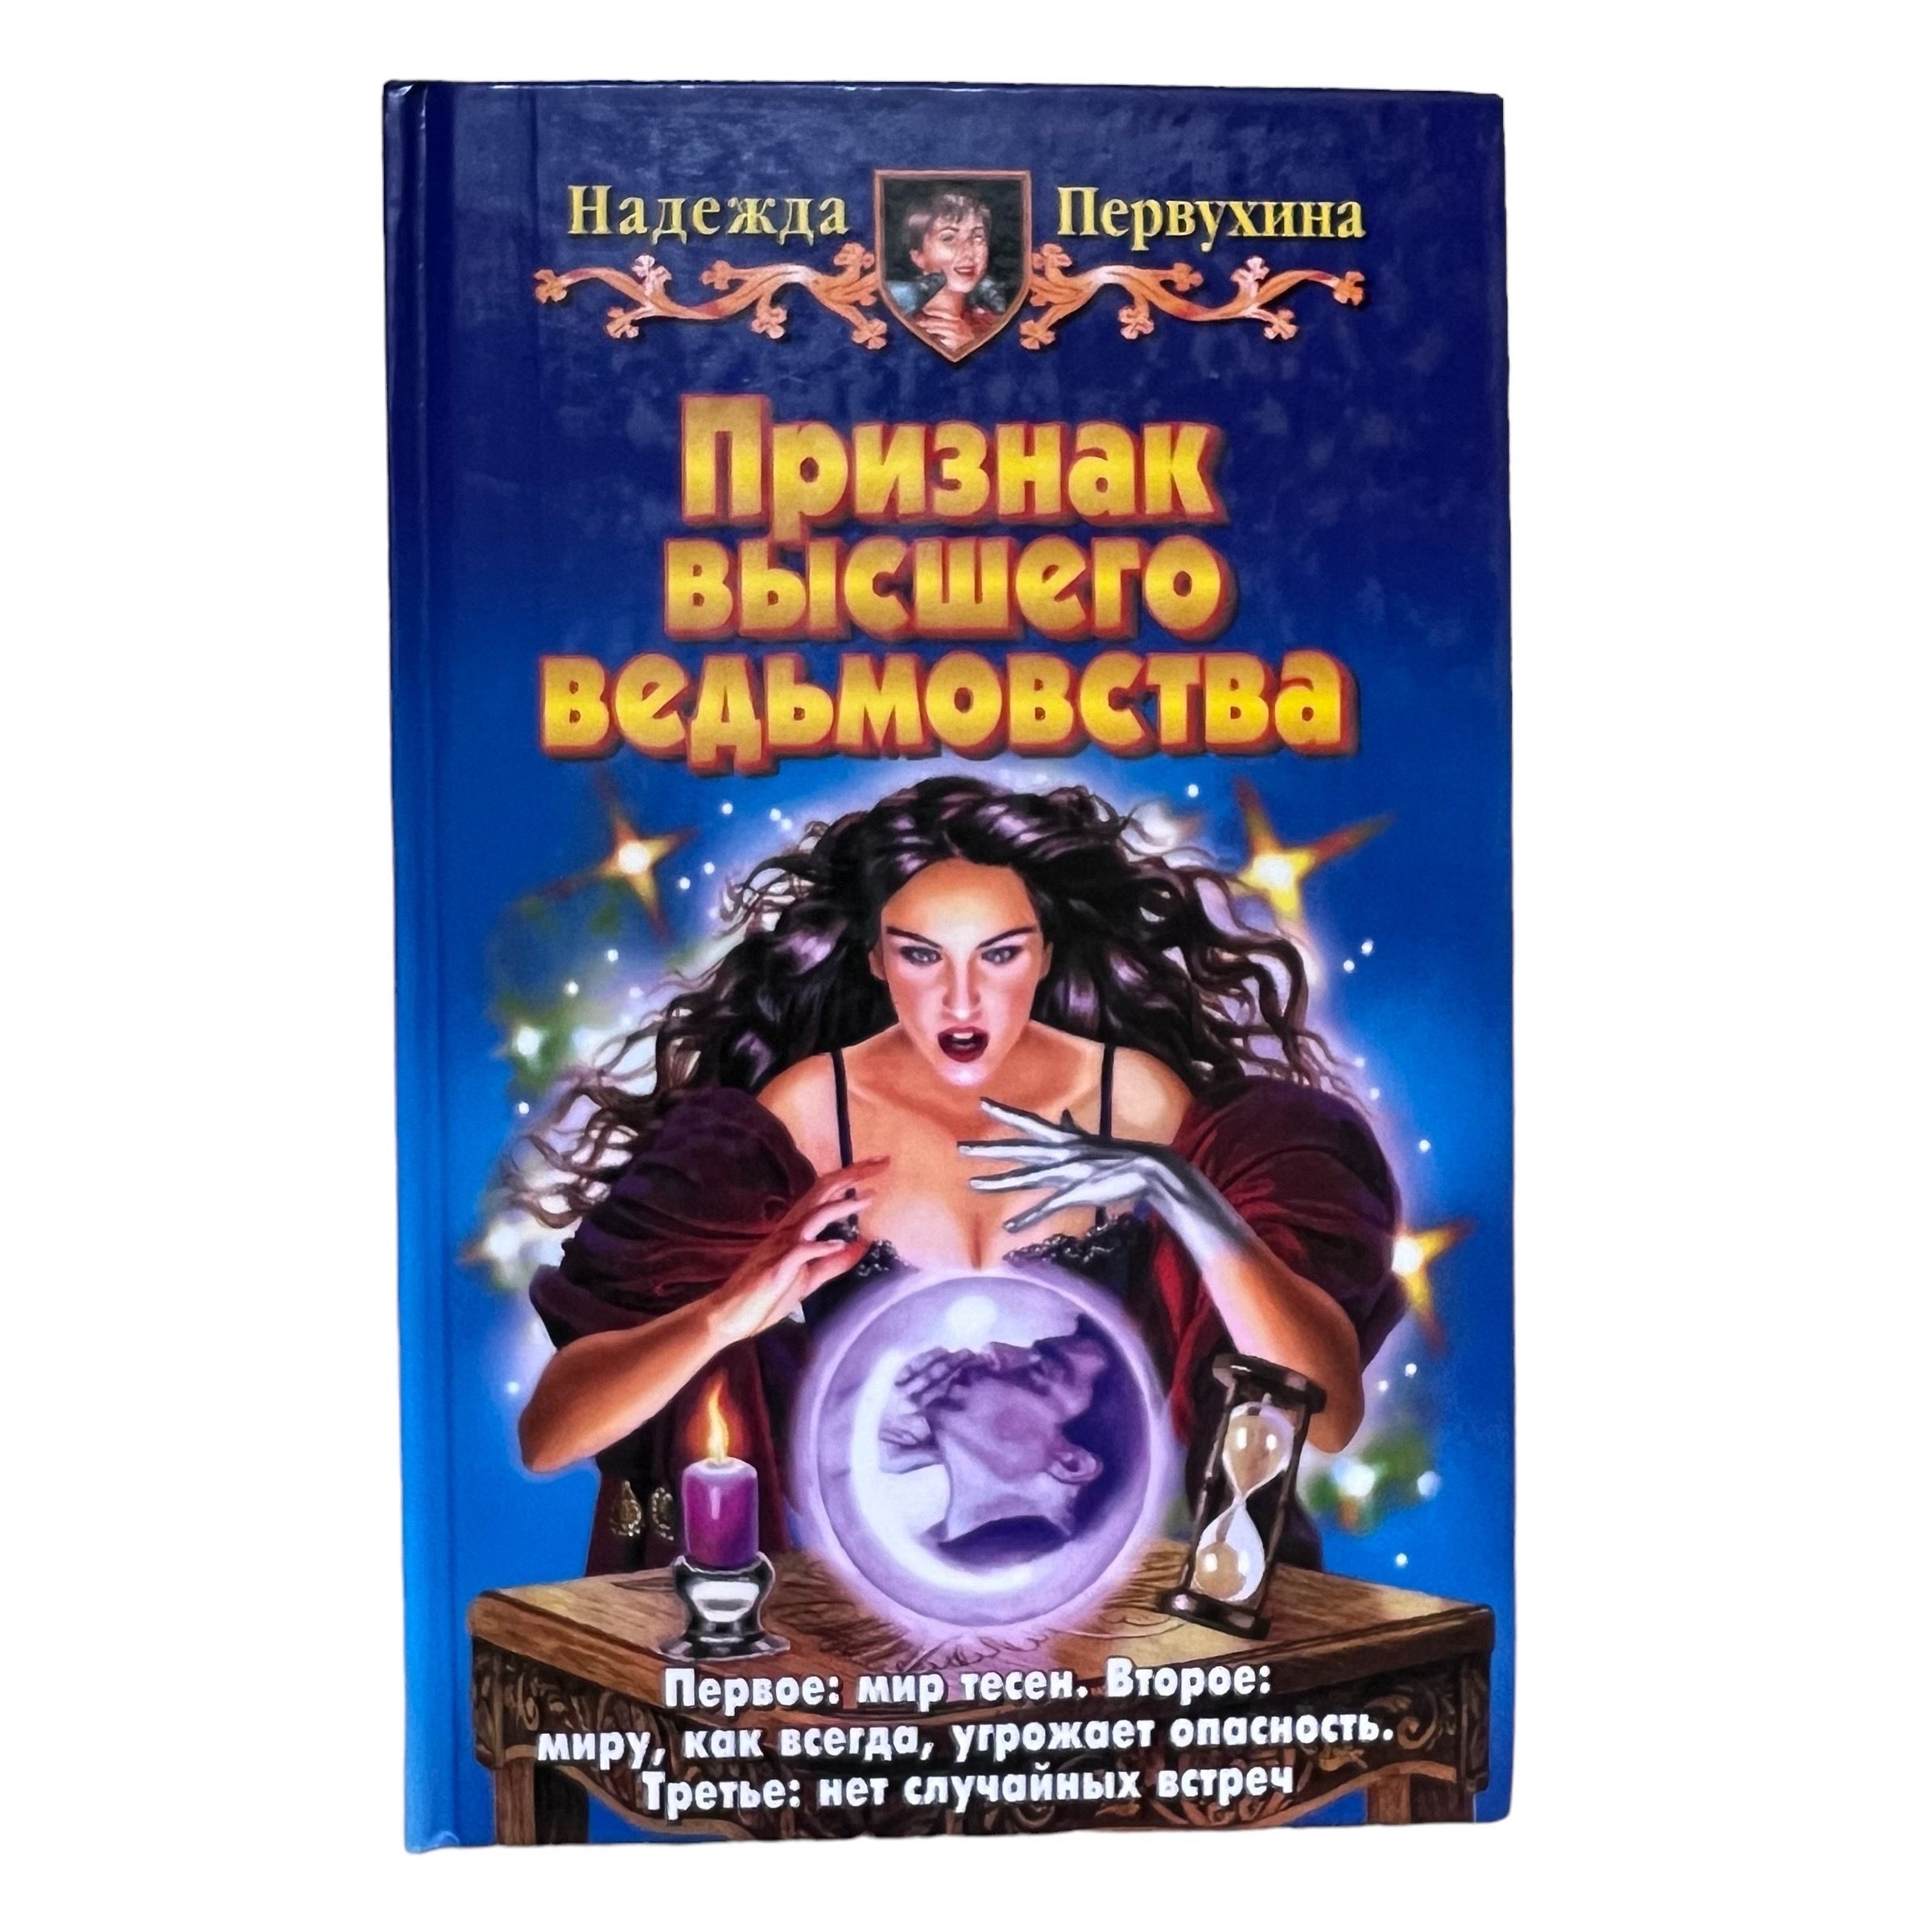 Читать книгу андрея первухина ученик 6. Купить в Новосибирске книгу Петербург для детей Первухина.